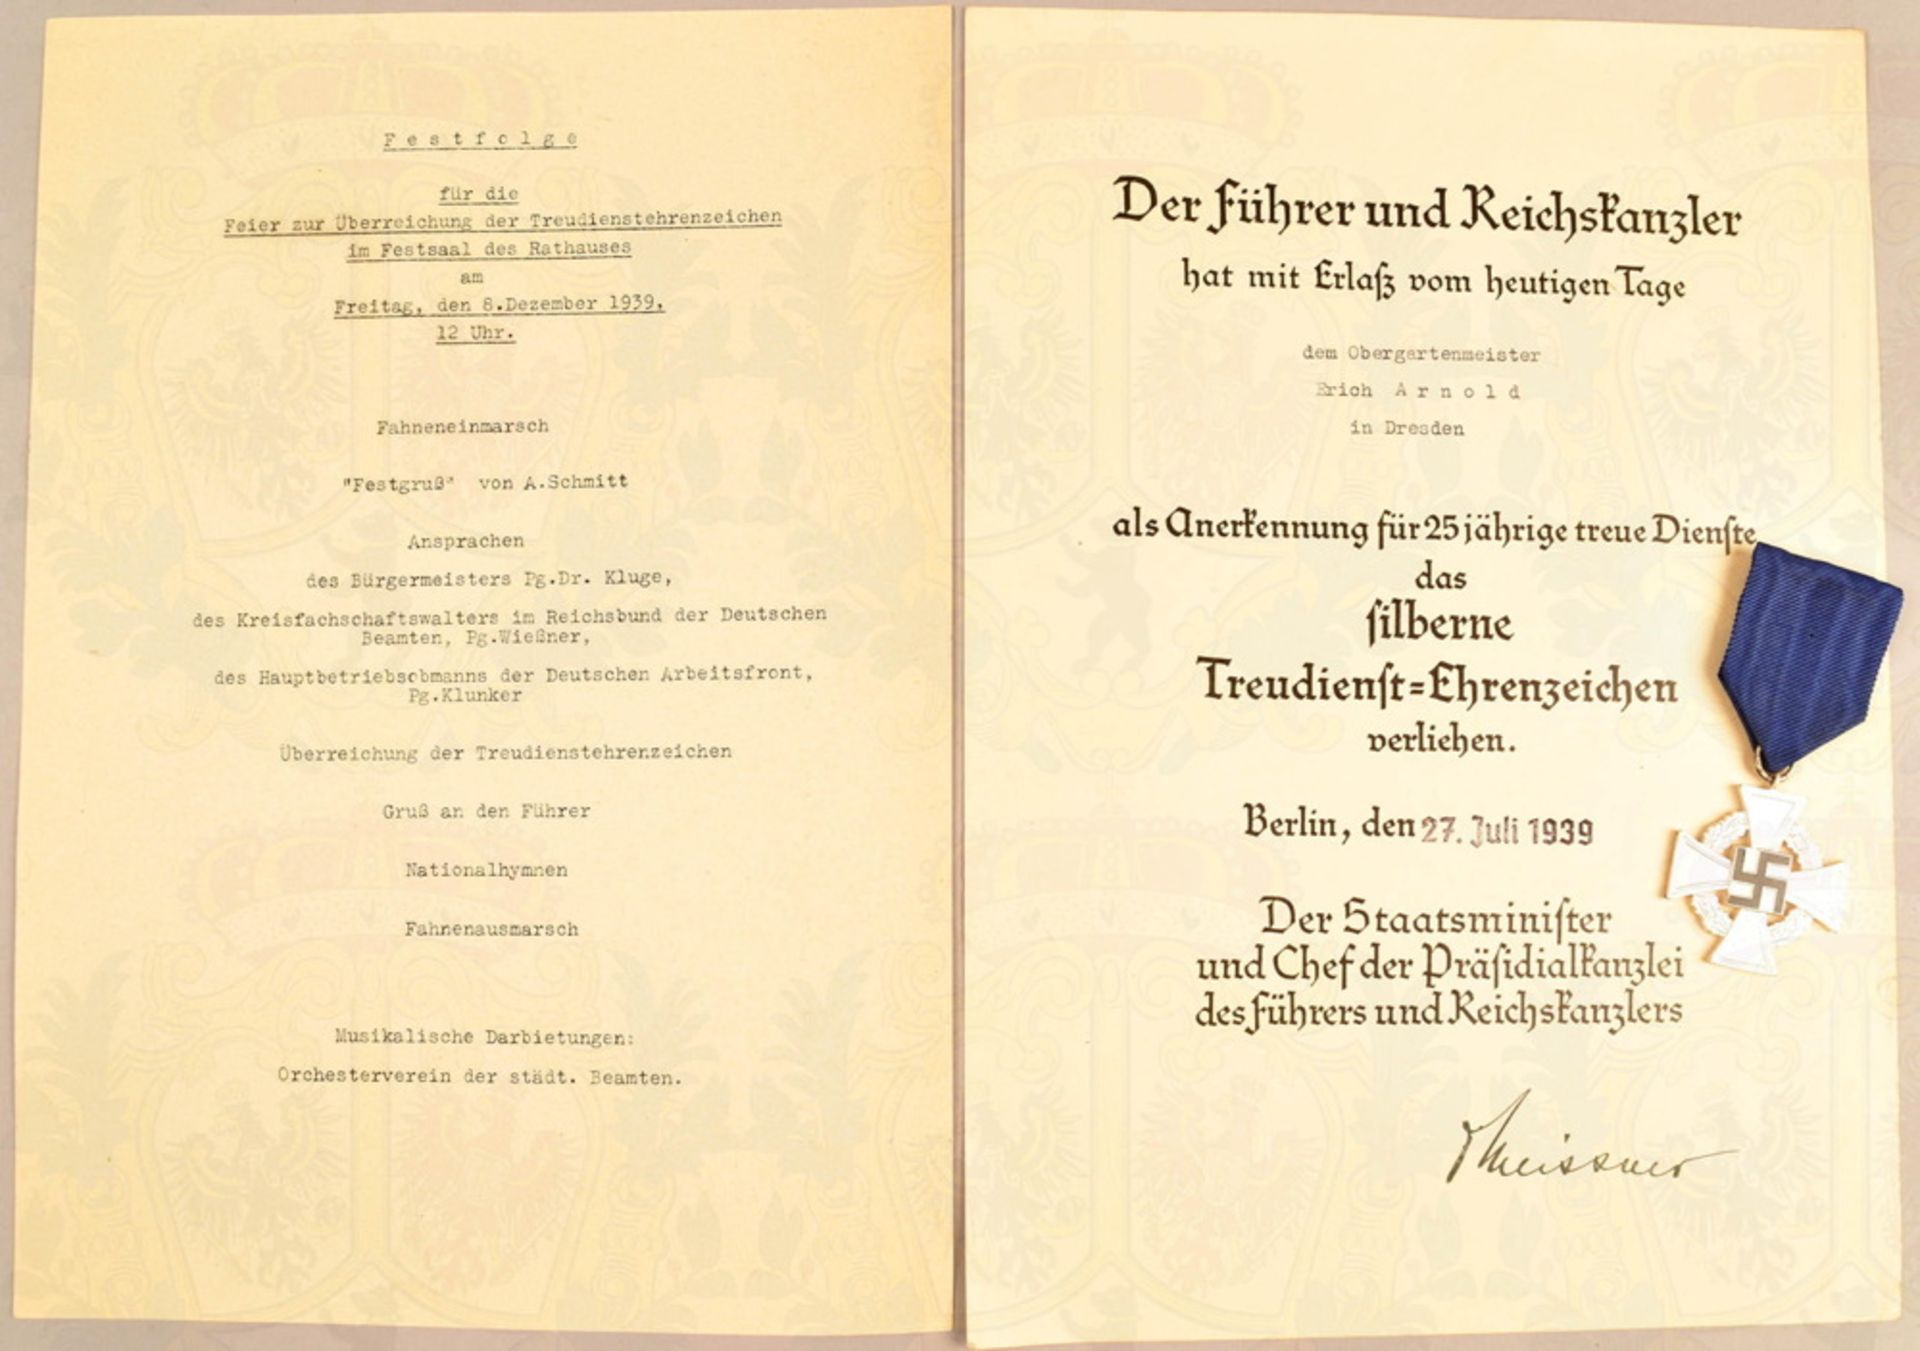 Treudienst-Ehrenzeichen in Silber für 25 Jahre - Image 2 of 4